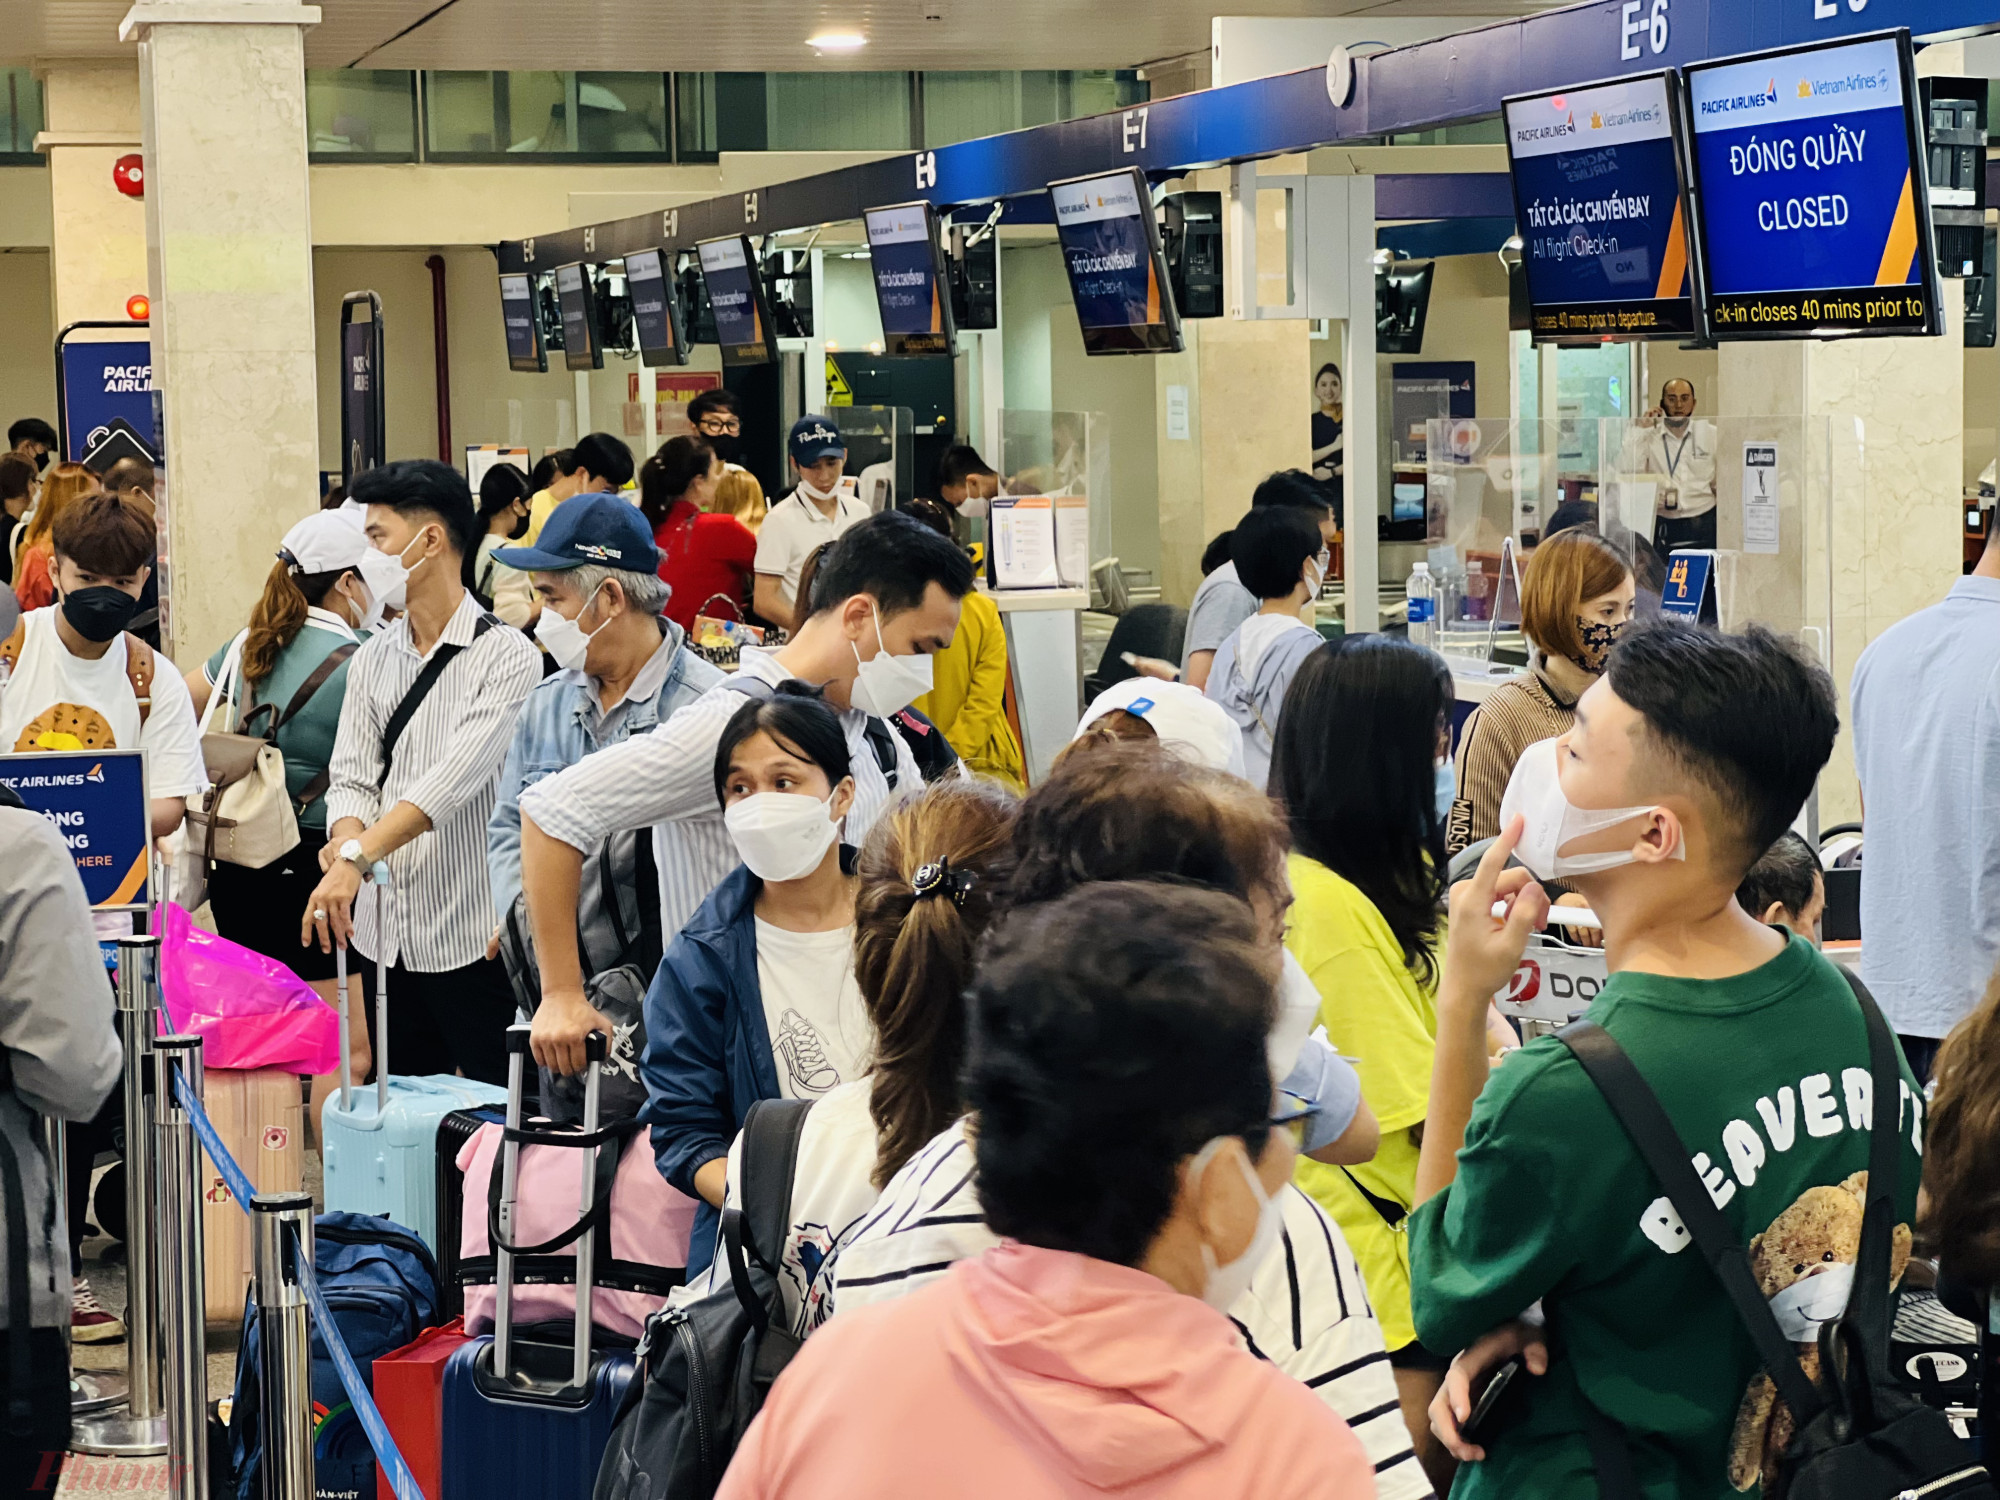  Nhiều người bắt đầu di chuyển rời khỏi TPHCM về quê nghỉ lễ, du lịch sớm. Càng về chiều, lượng khách đổ về sân bay bắt đầu đông hơn.